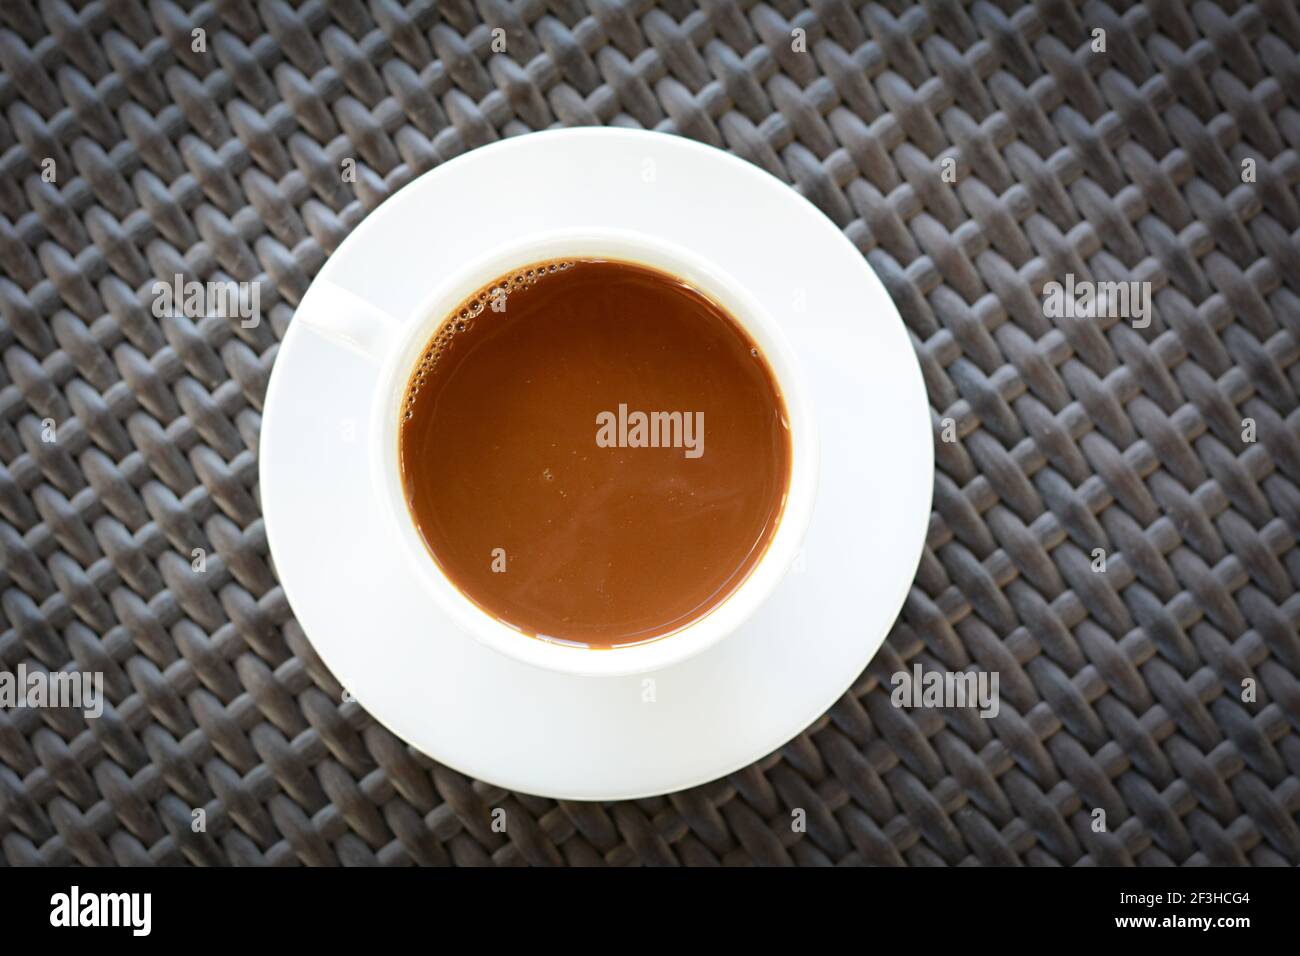 Une tasse de café sur une table en osier brun Banque D'Images